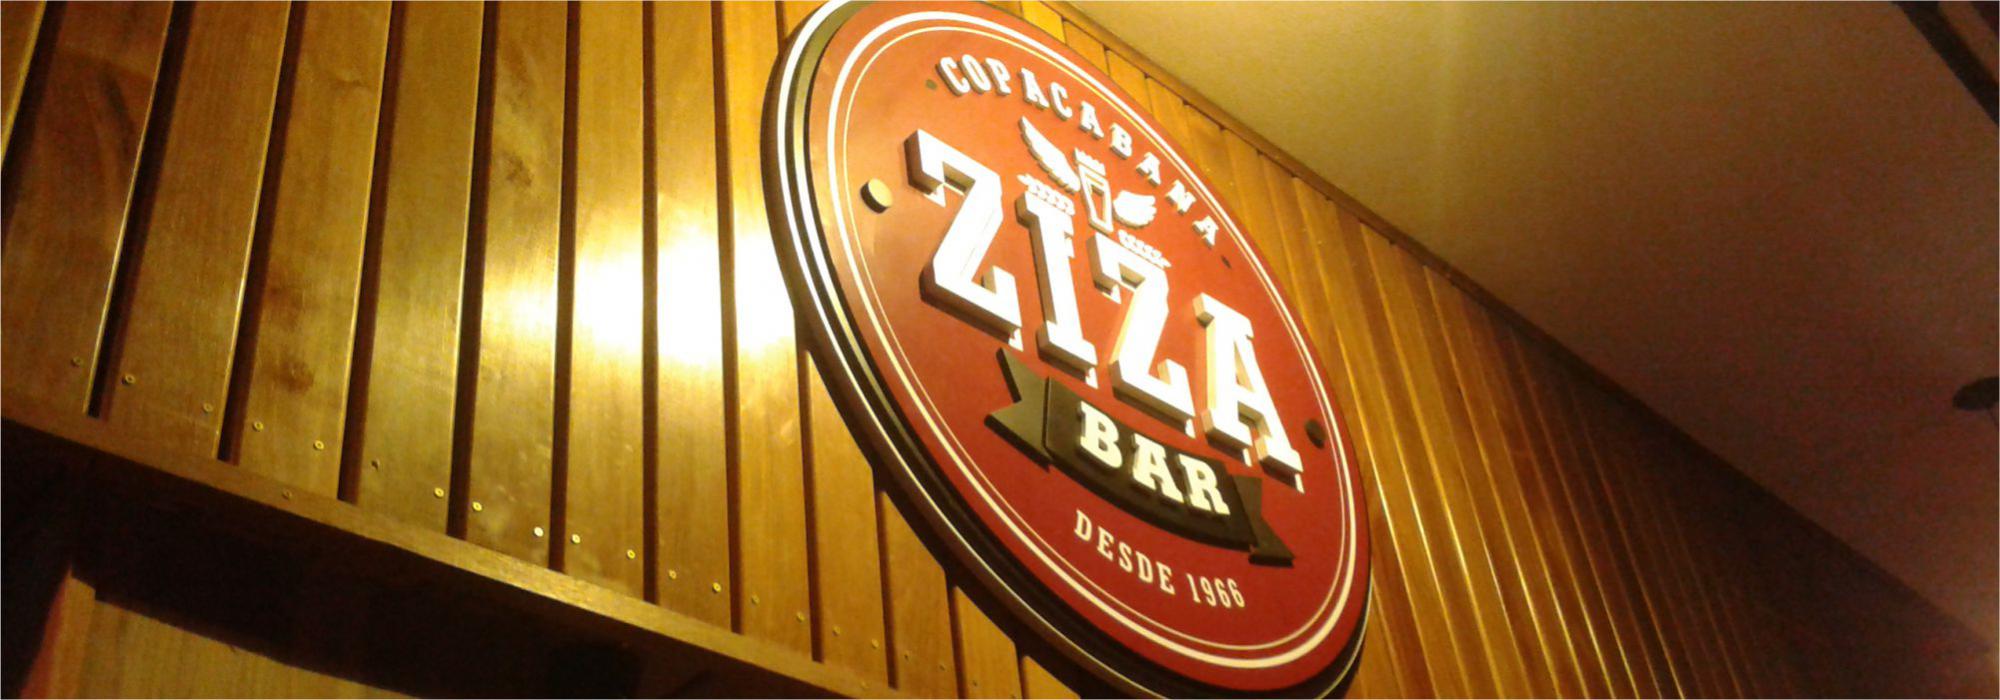 Ziza Bar